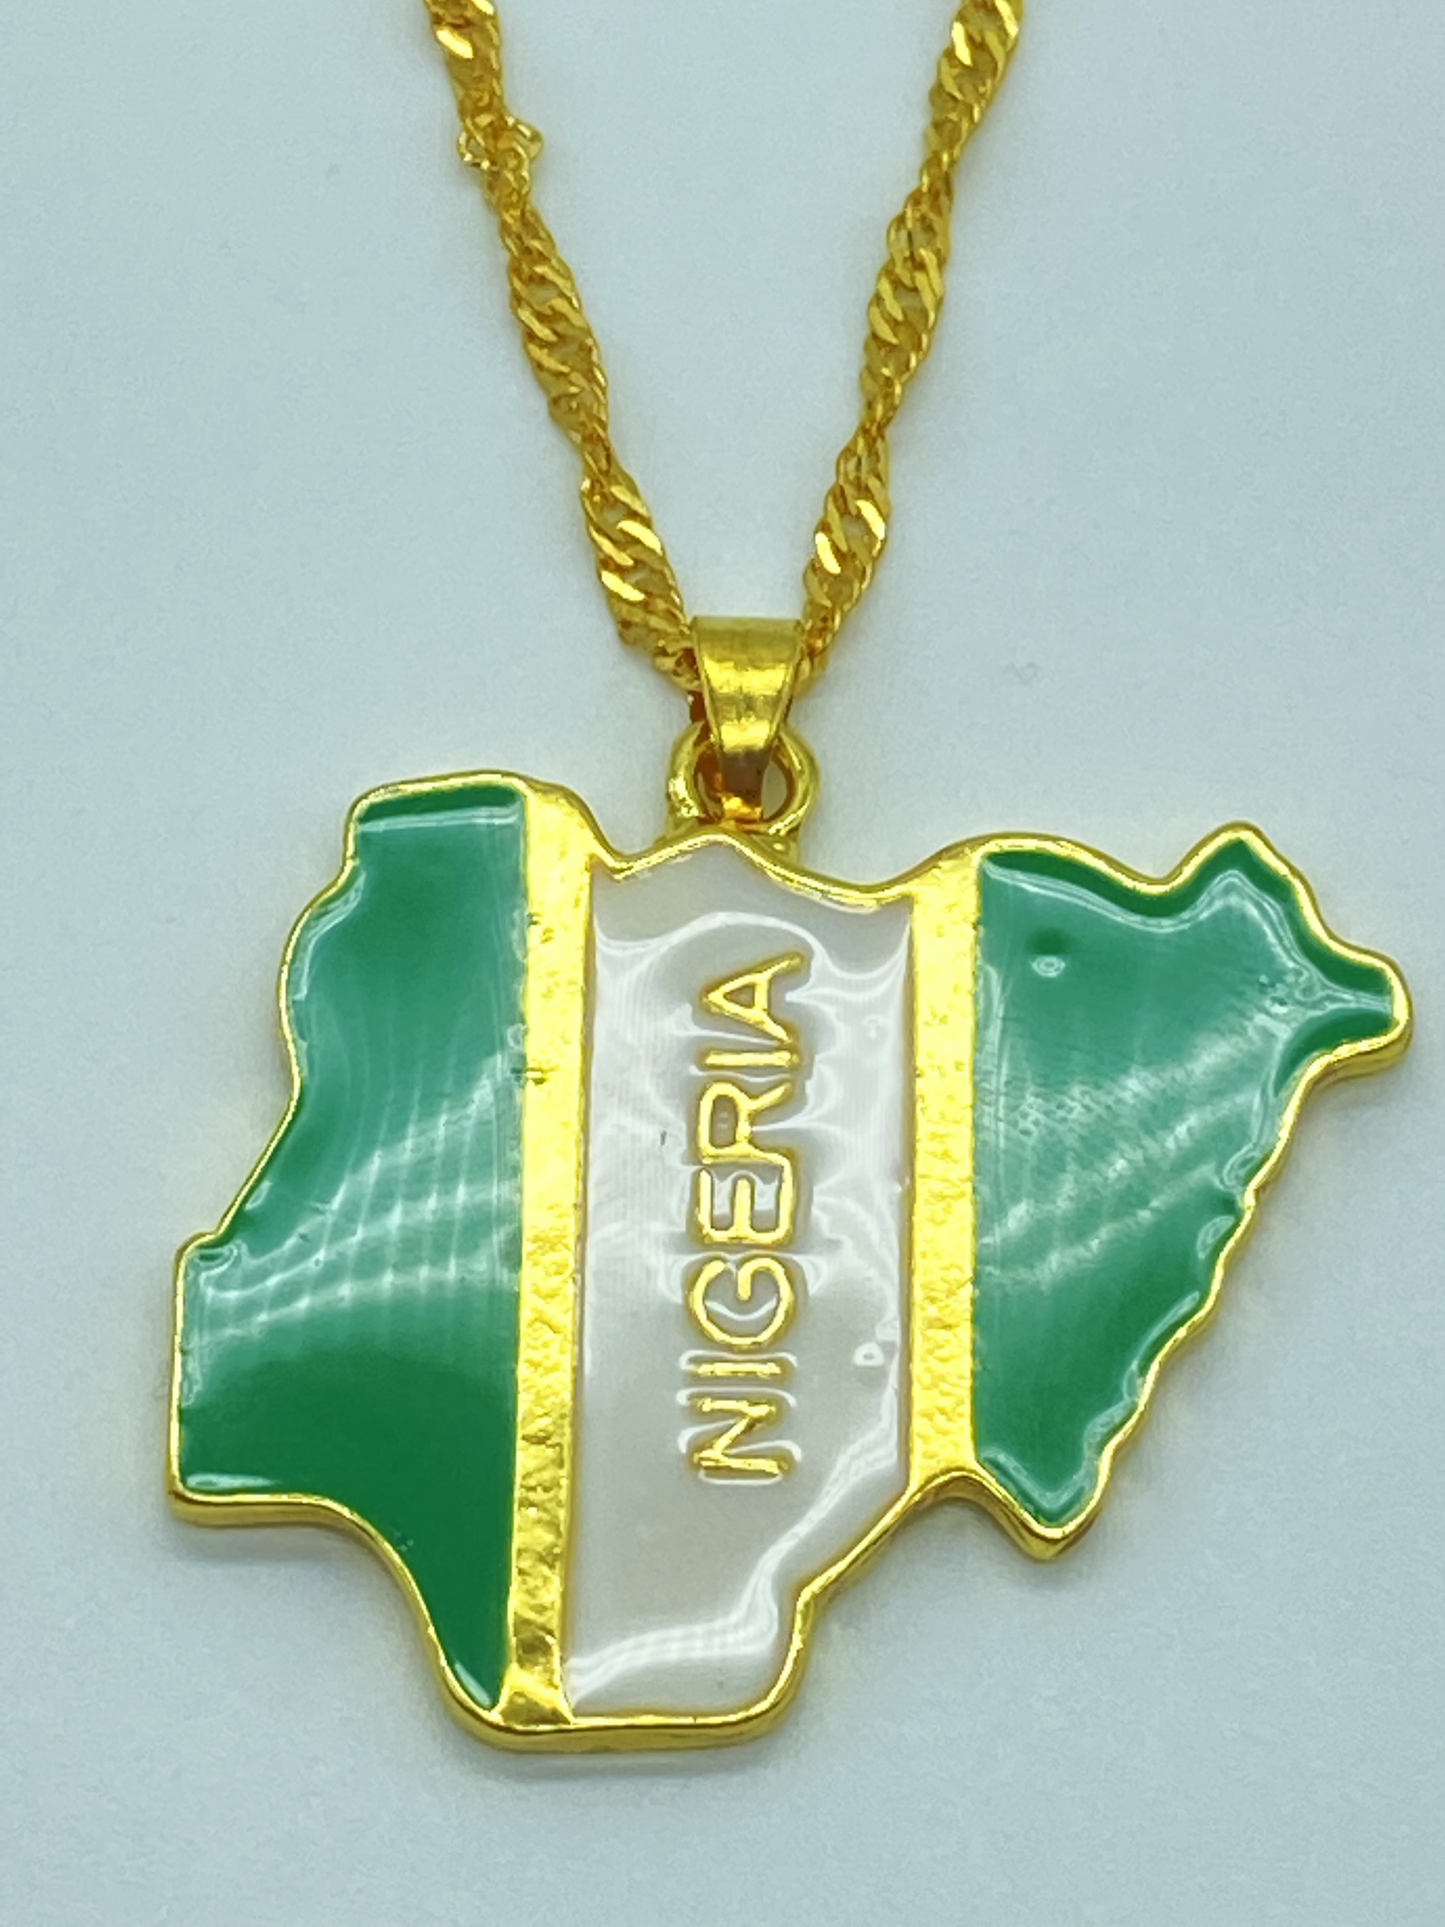 Nigeria Necklace